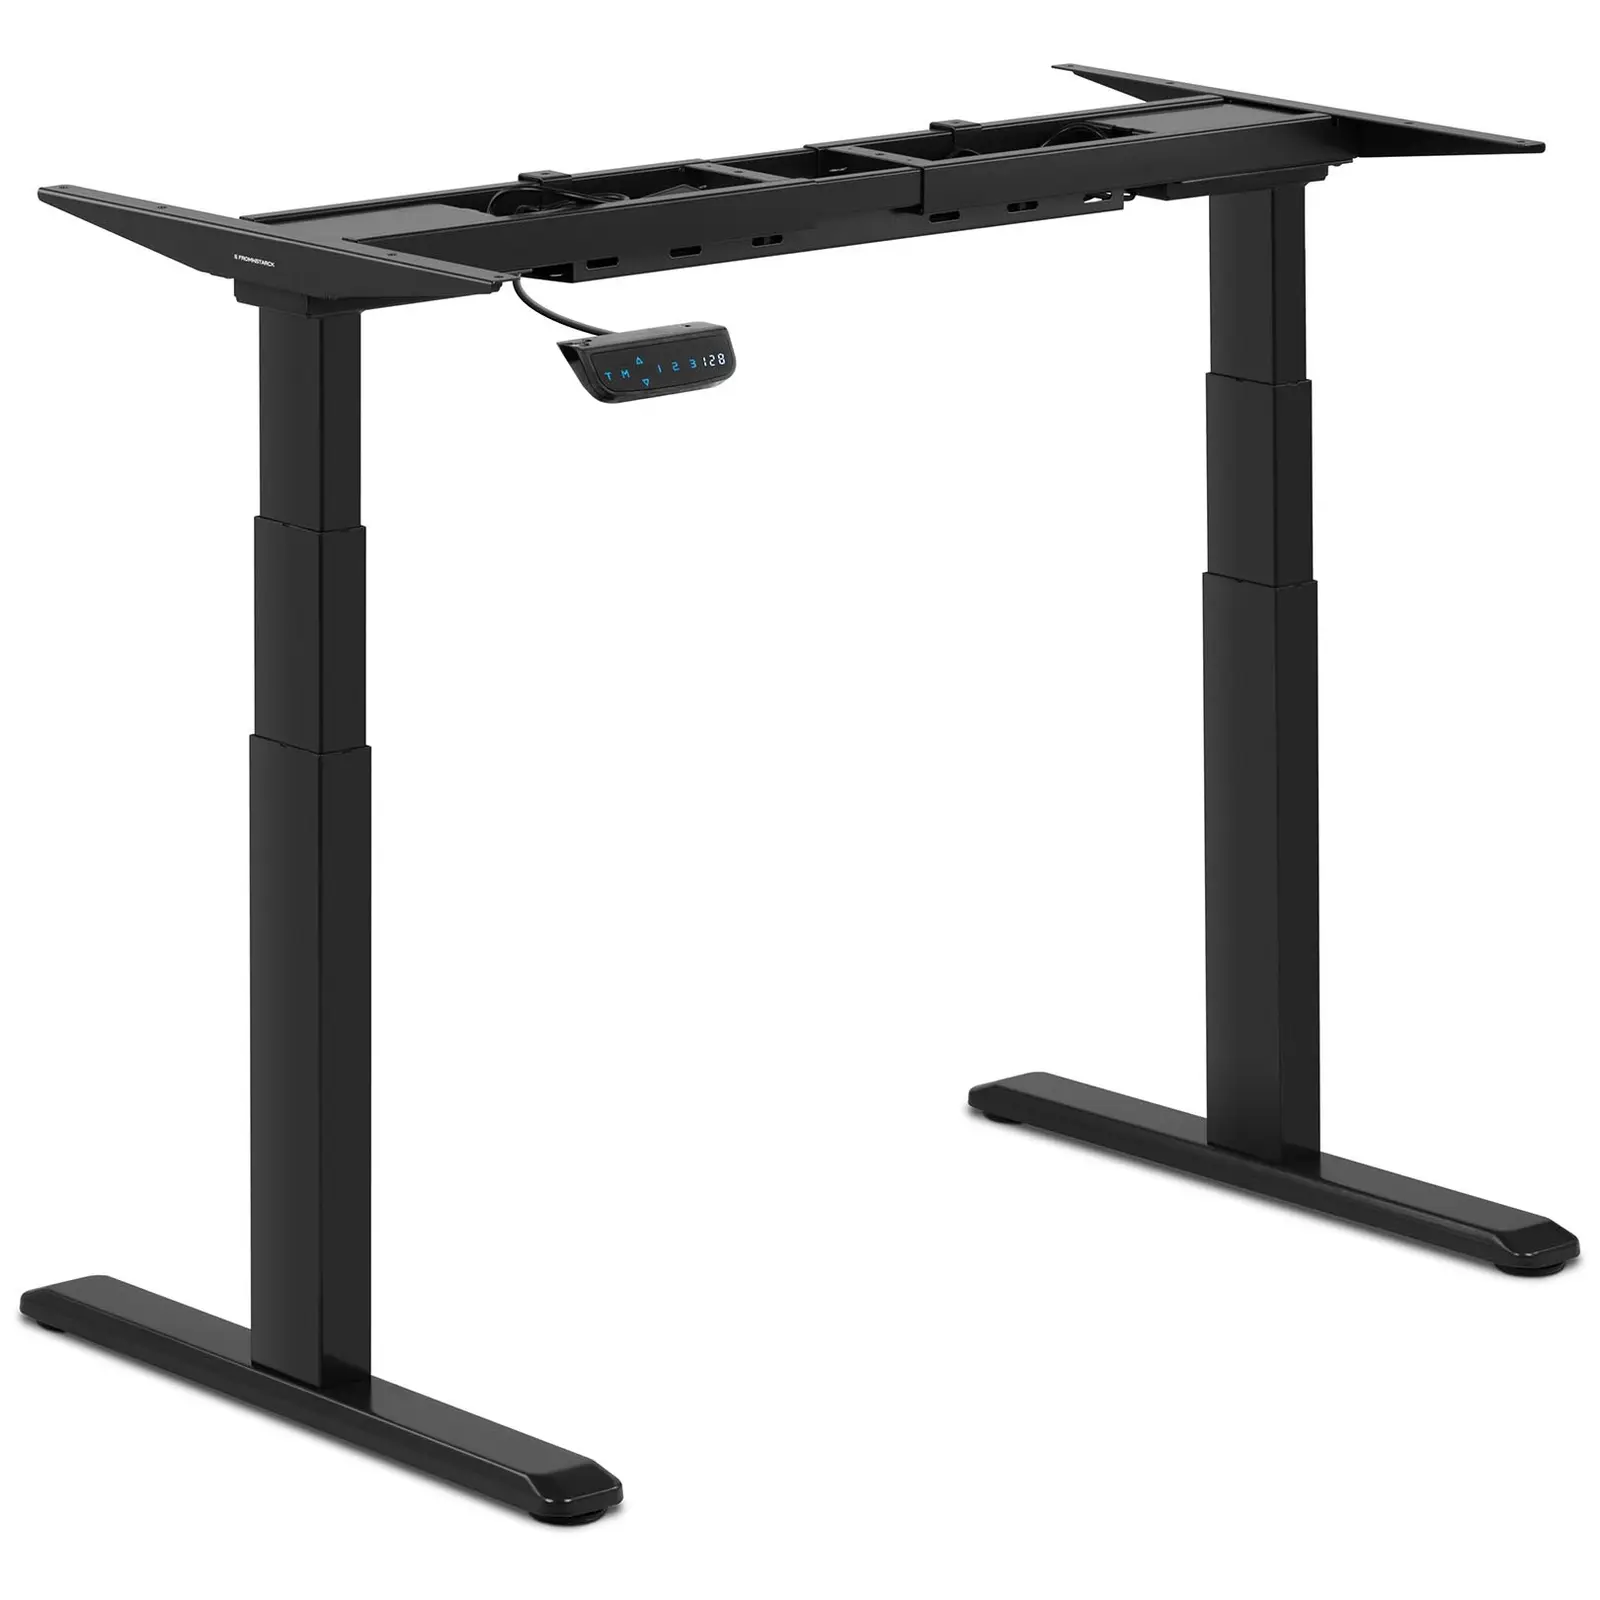 Estrutura para mesa de escritório - 200 W- 125 kg - Preto